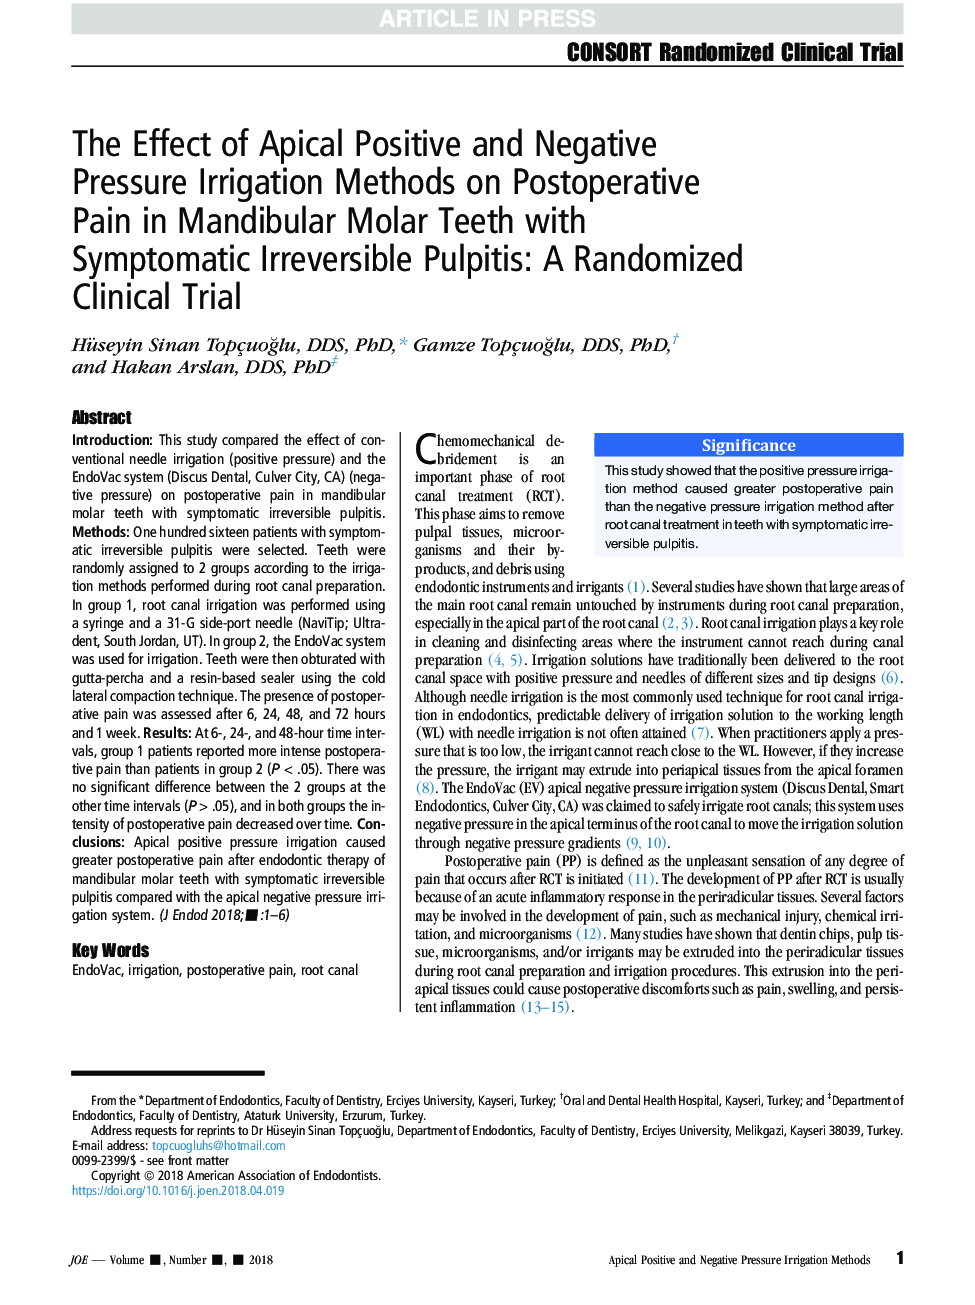 بررسی تأثیر روشهای آبیاری مثبت و منفی آپیکال بر درد پس از عمل در دندانهای مینا دندان مولار با پالپیت ناپایدار قابل علاج: یک آزمایش بالینی تصادفی 